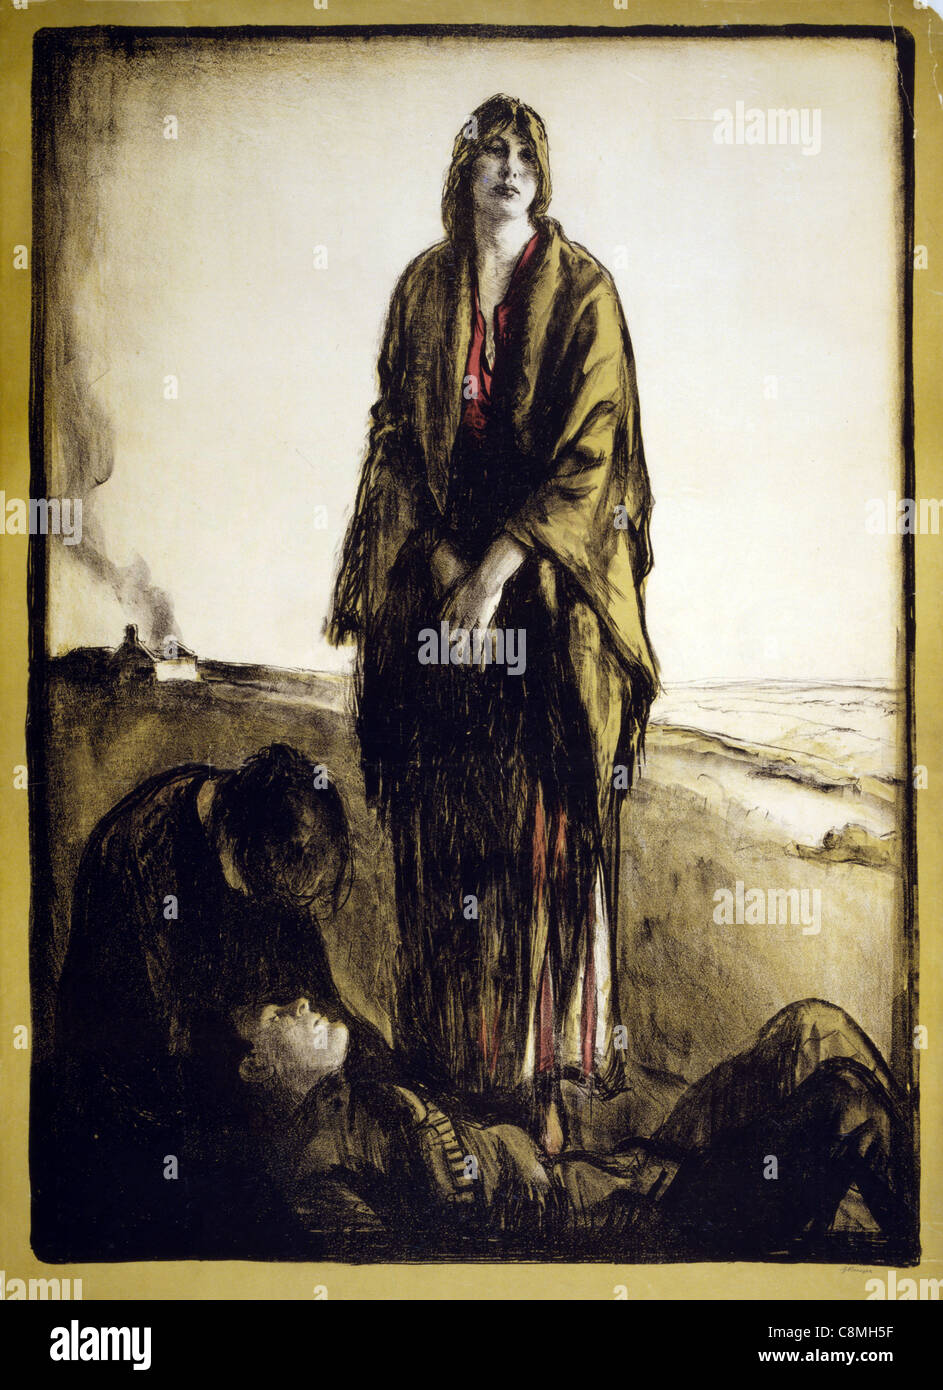 Eine Frau steht trostlos, als eine andere beugt sich über einen toten Soldaten; ein Haus brennt in den Hintergrund, Krieg poster Stockfoto